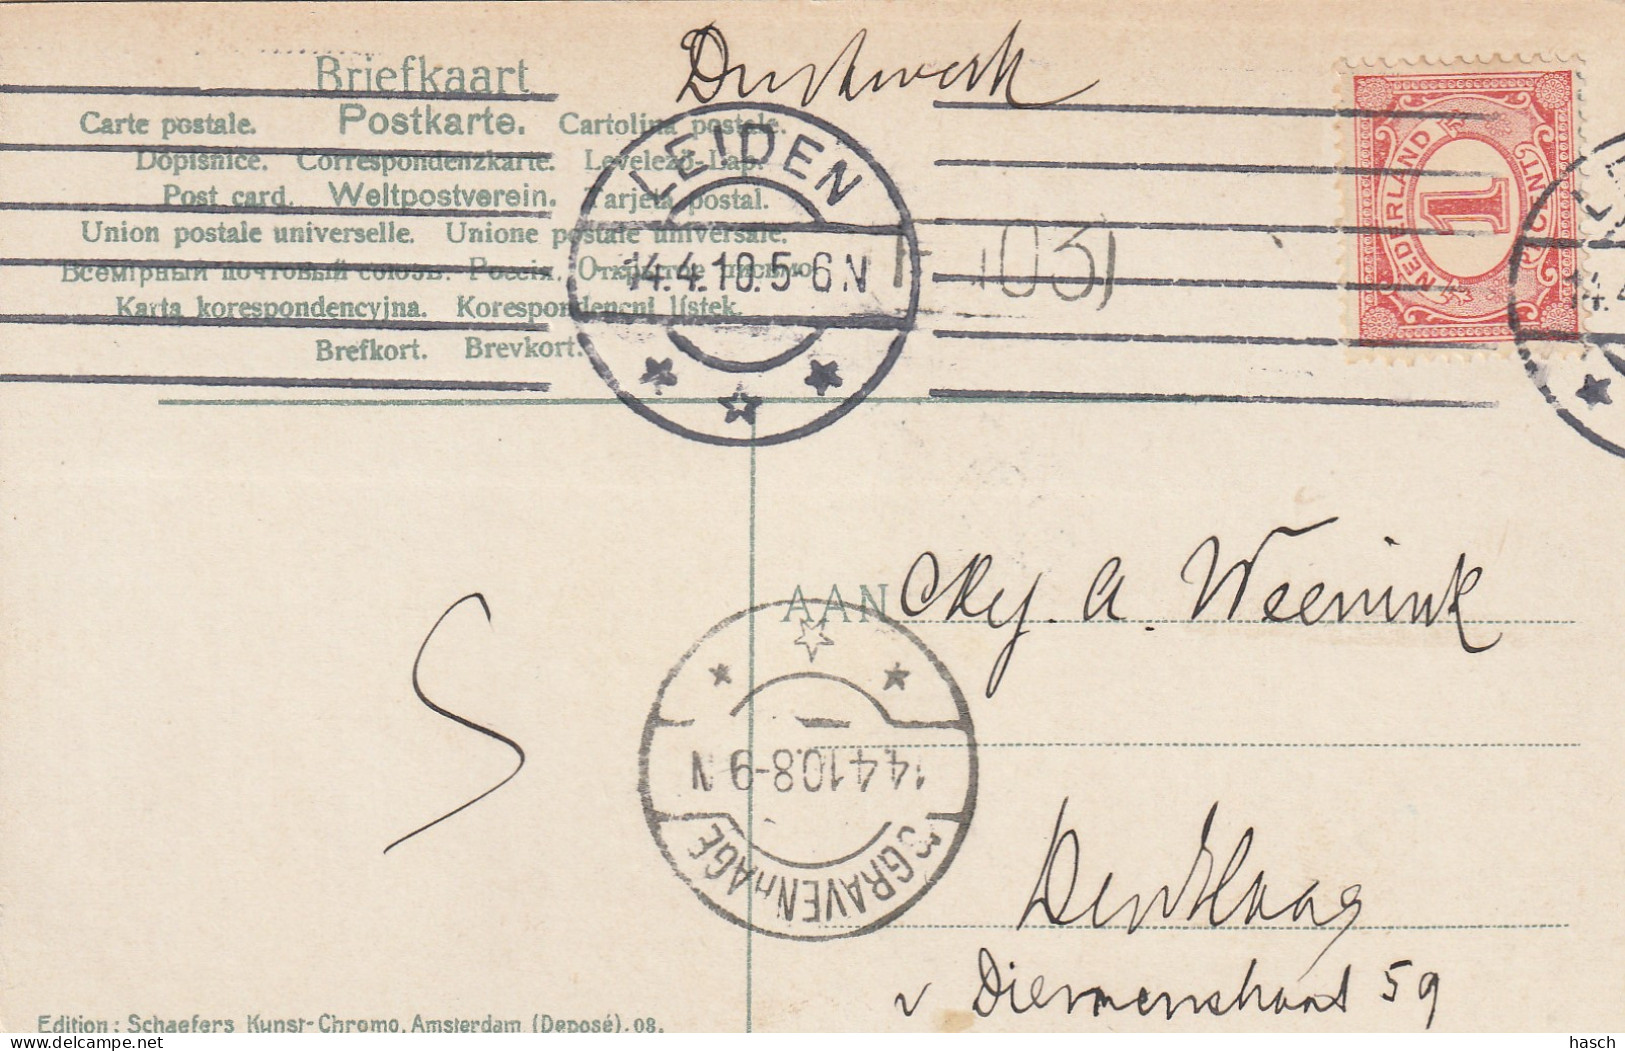 4903 69 Lisse, Hyacintenvelden. 1910. (Zie Hoeken) - Lisse